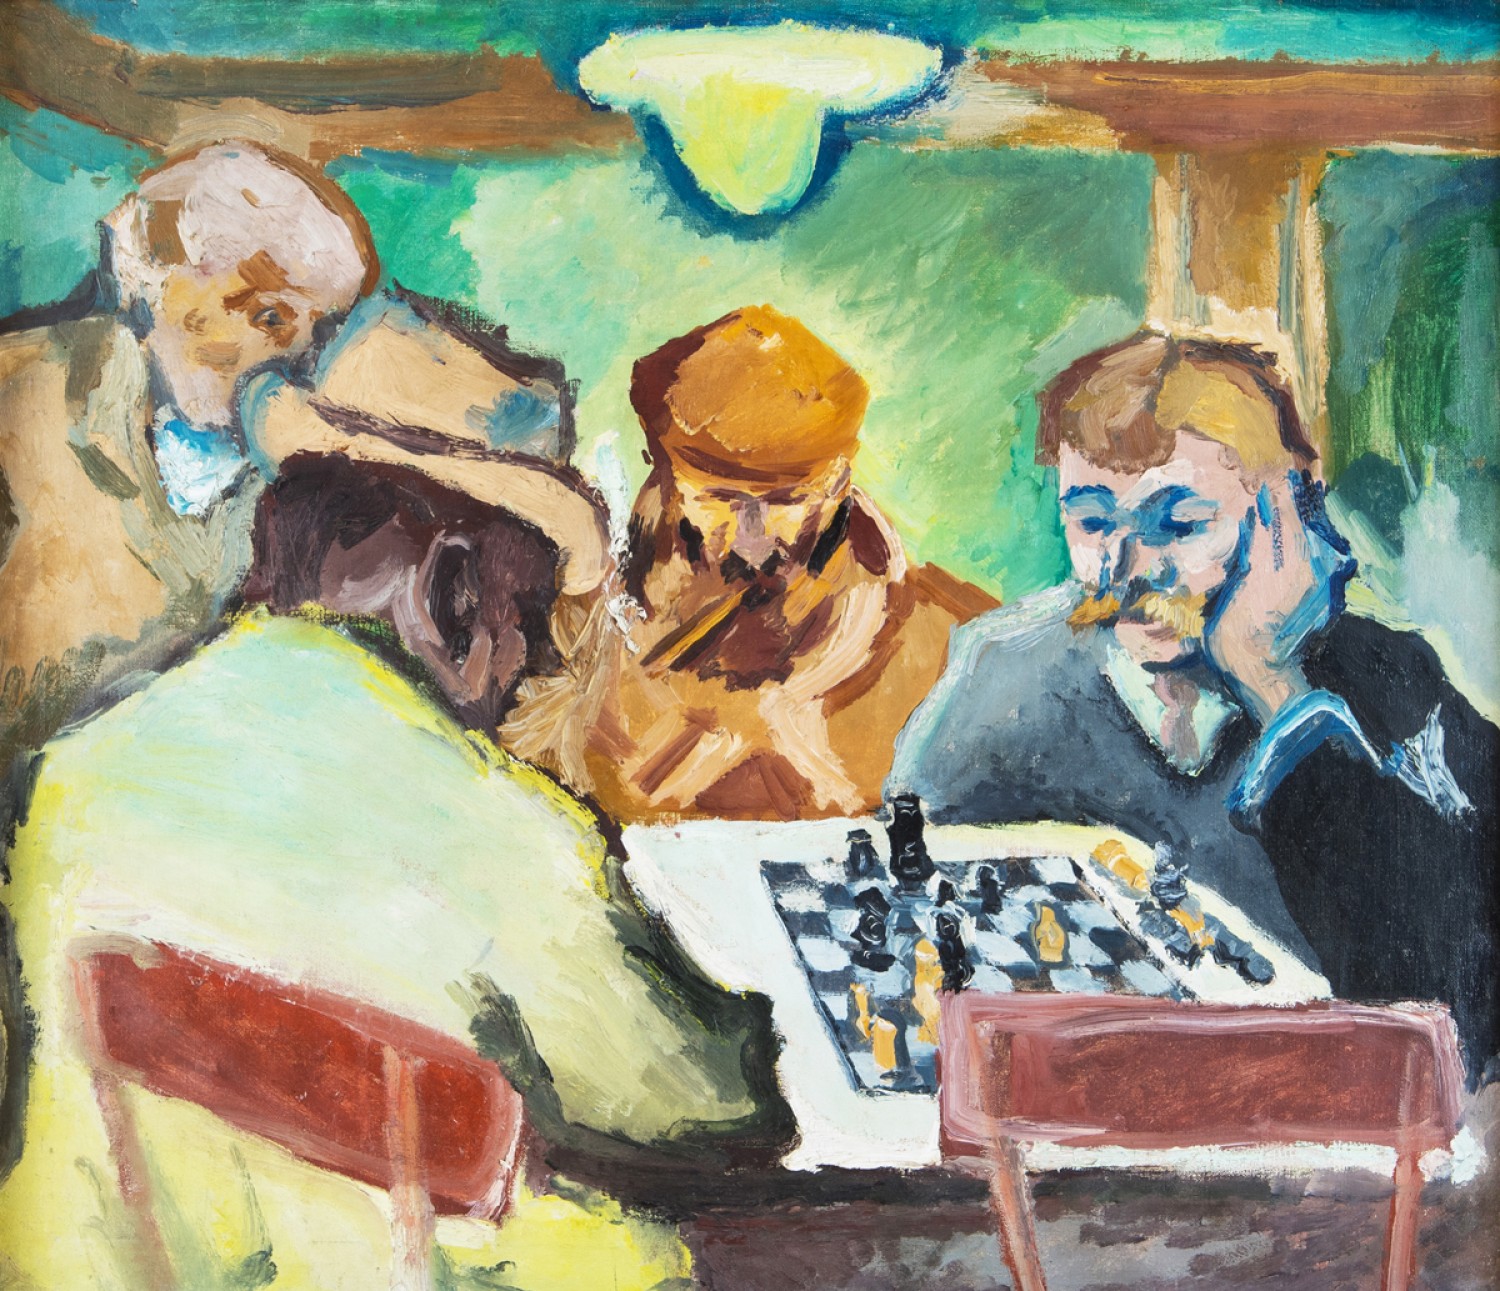 Emil Filla, Hráči (šachu), 1908, olej na plátně, 71 x 83 cm, vyvolávací cena: 14 500 000 Kč (+22% provize), Galerie Pictura 23. 5. 2018